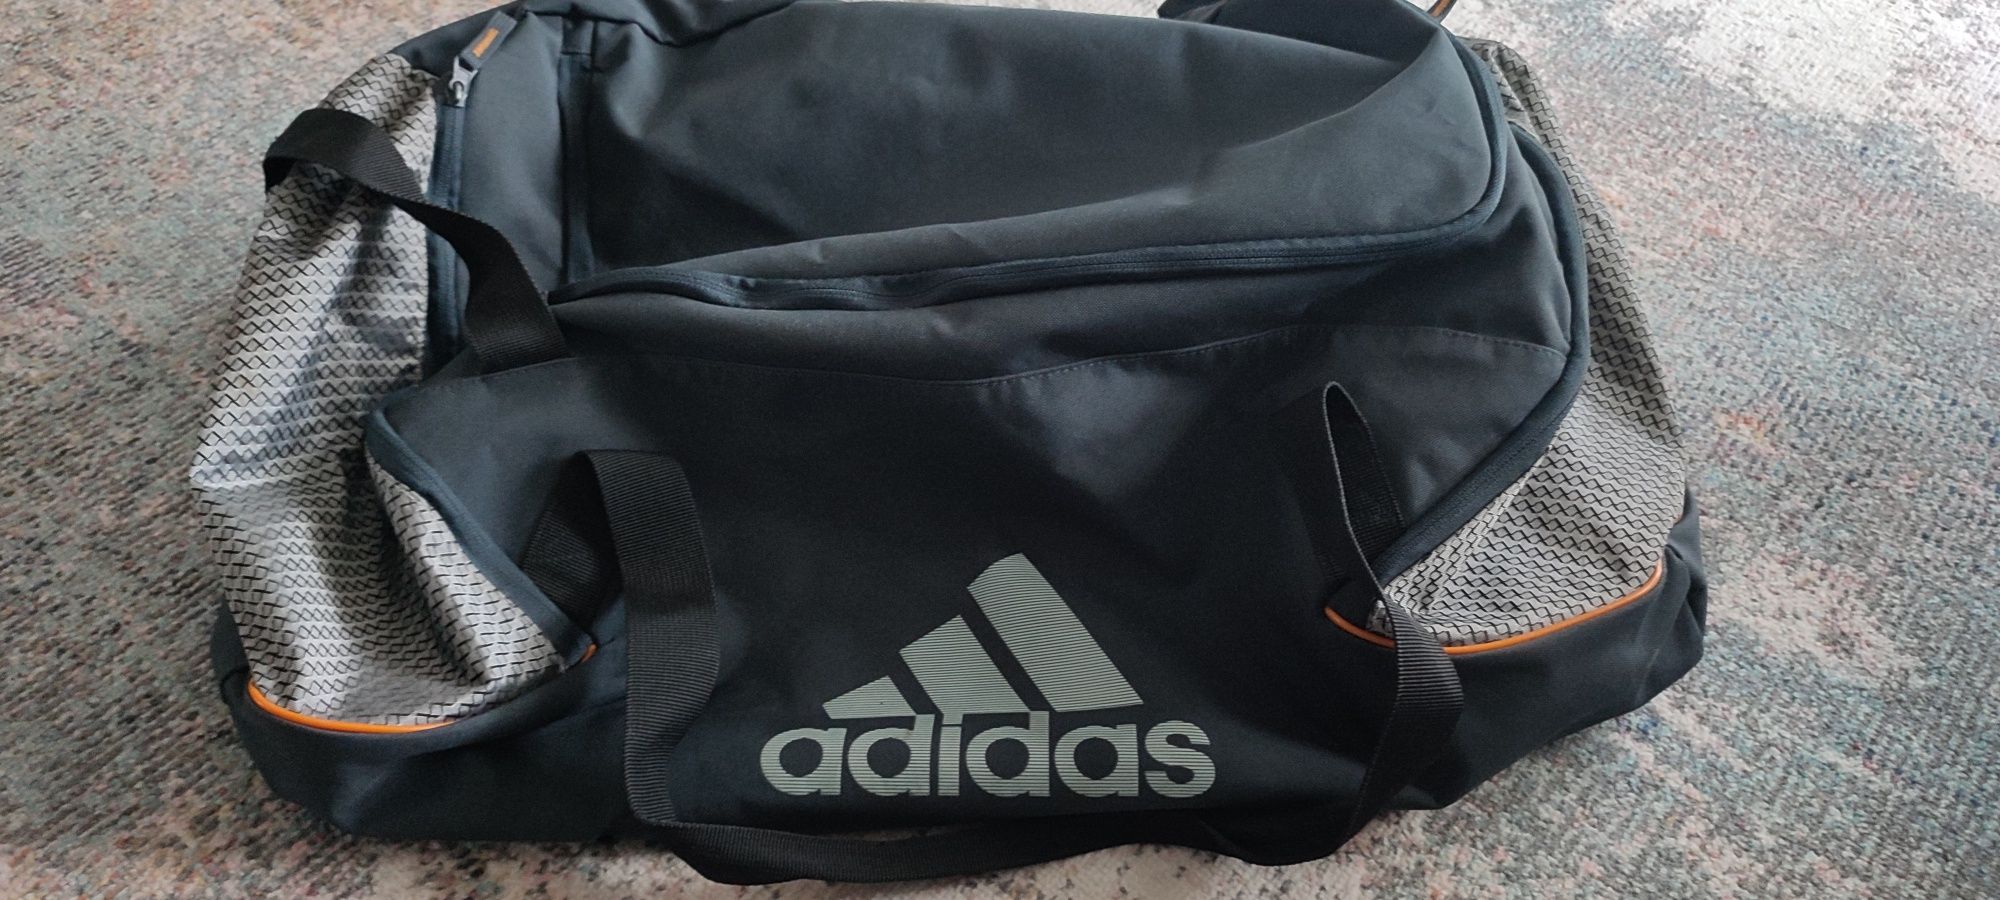 Pojemna torba sportowa Adidas na ramię podróżna szara trening